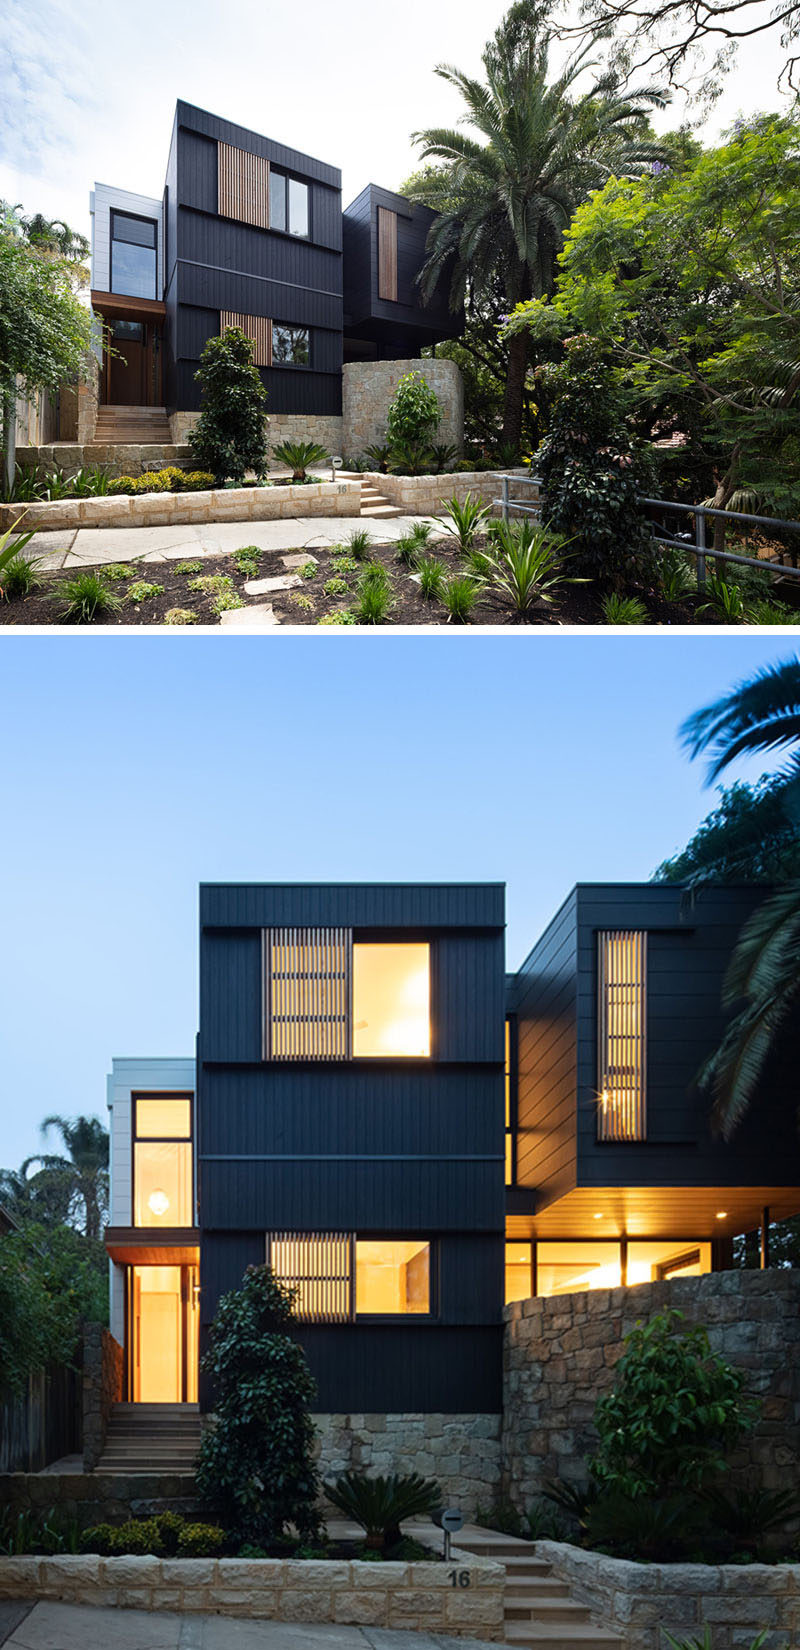  Снаружи дом облицован черненым камбийским ясенем и Scyon Stria, песчаник был использован для создания различных уровней в палисаднике, ведущий к входной двери дома. # Ландшафтный дизайн # Современный дом # Архитектура 